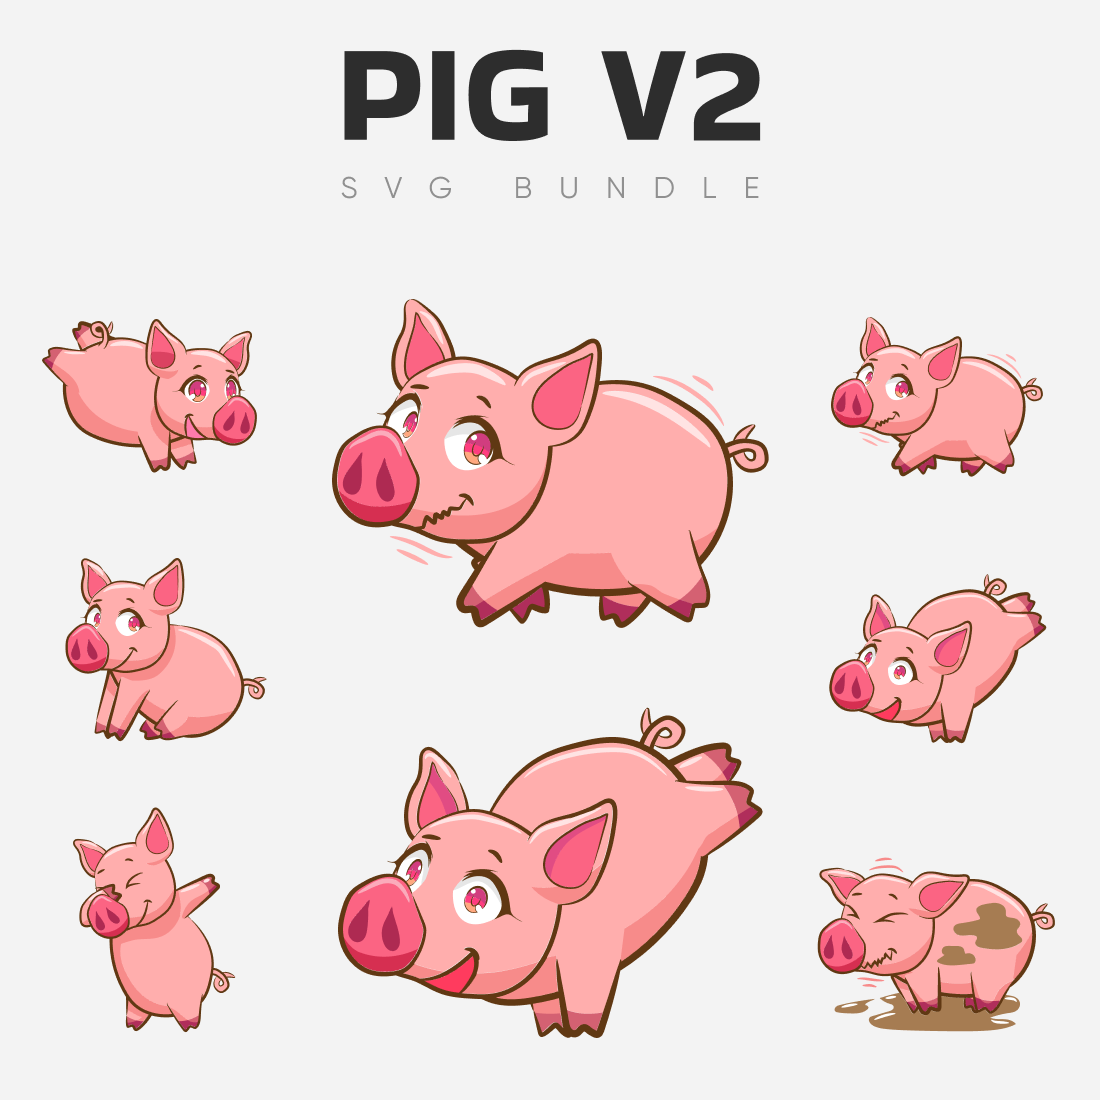 Pig v2 svg bundle.